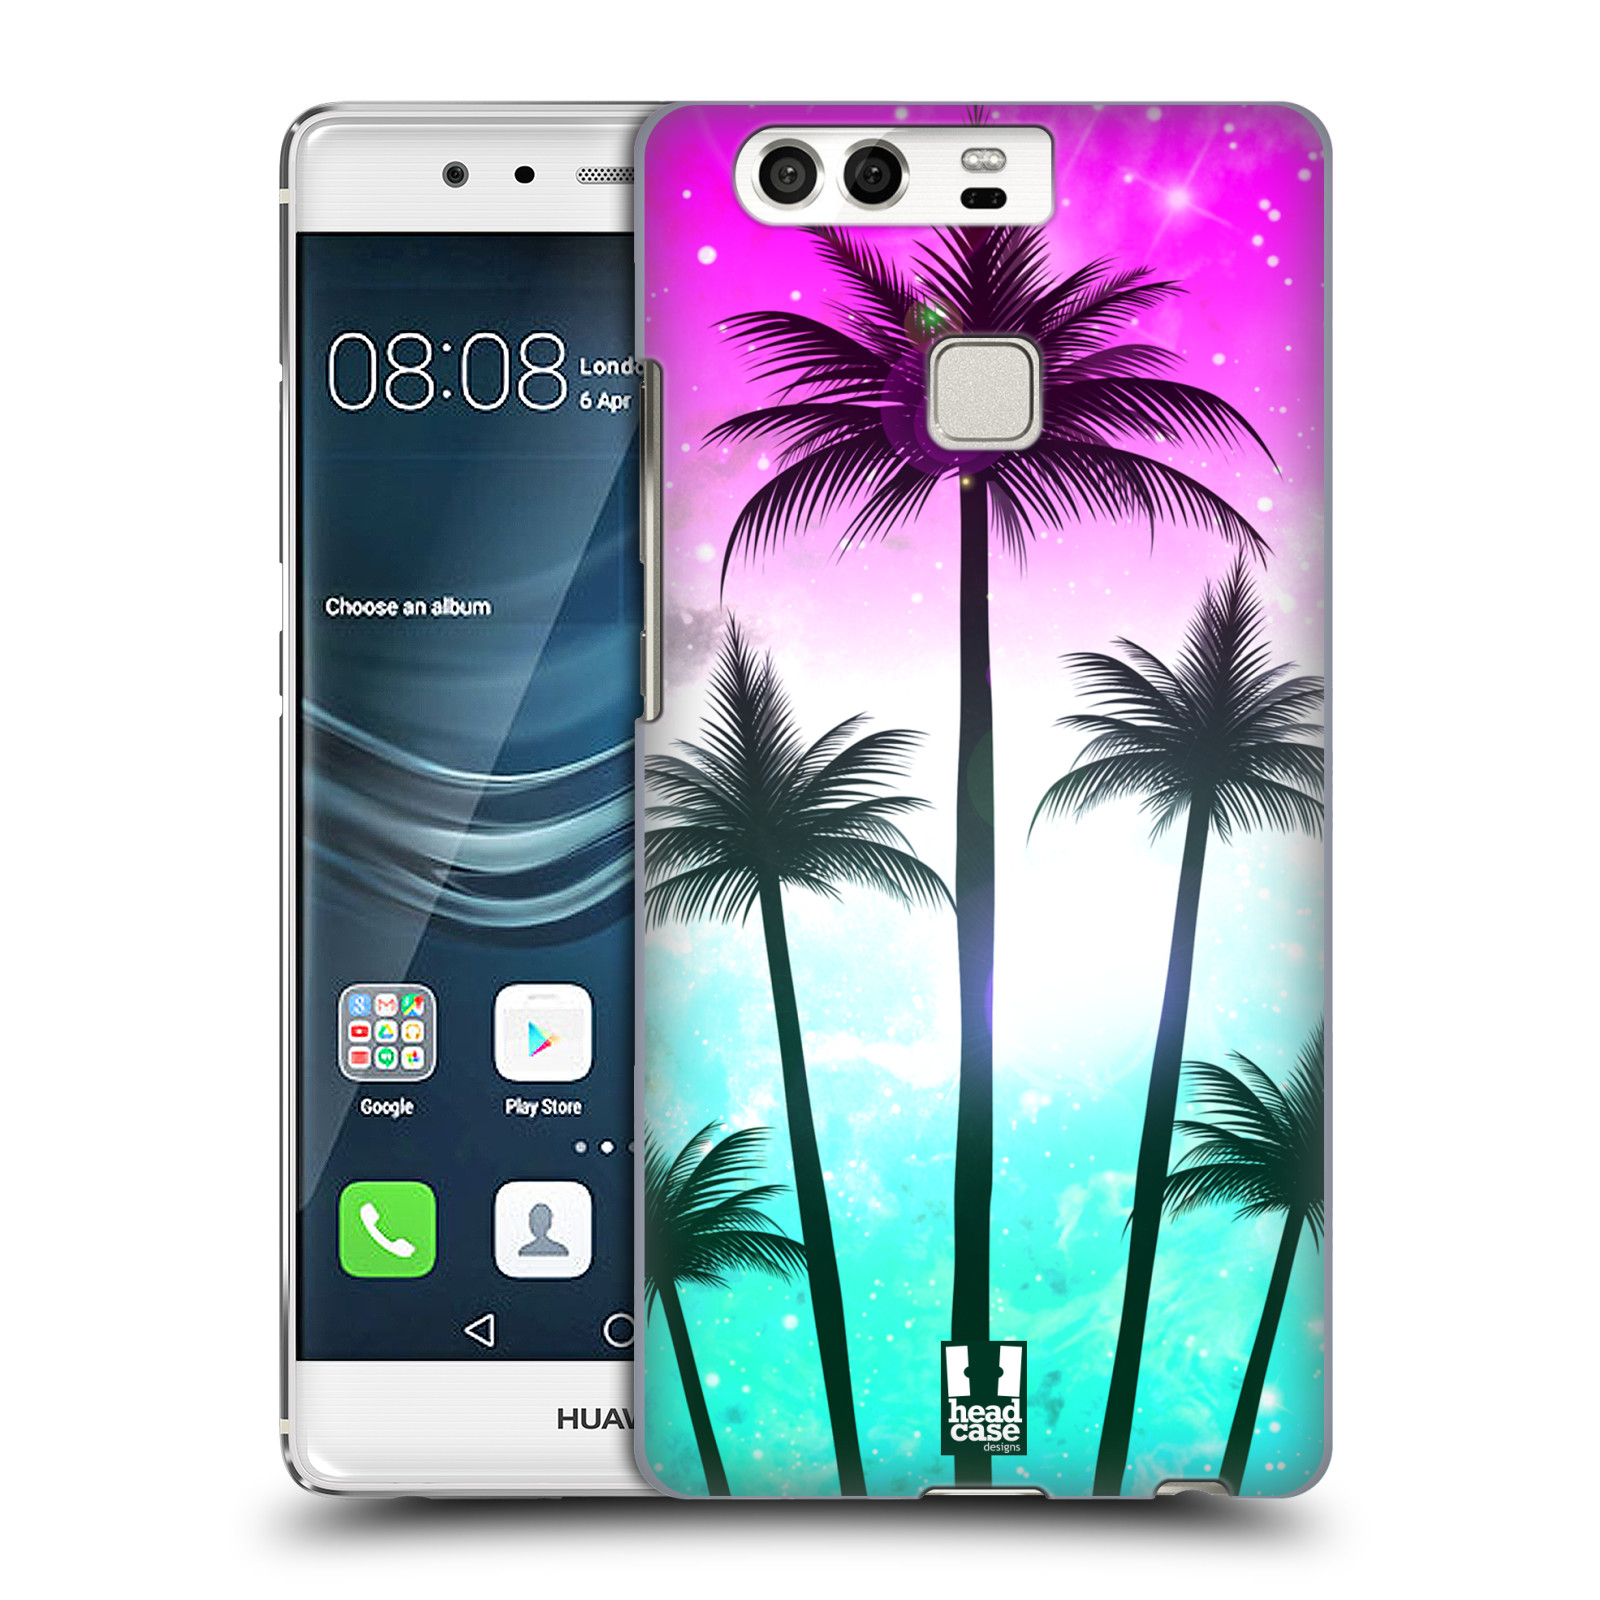 HEAD CASE plastový obal na mobil Huawei P9 / P9 DUAL SIM vzor Kreslený motiv silueta moře a palmy RŮŽOVÁ A TYRKYS